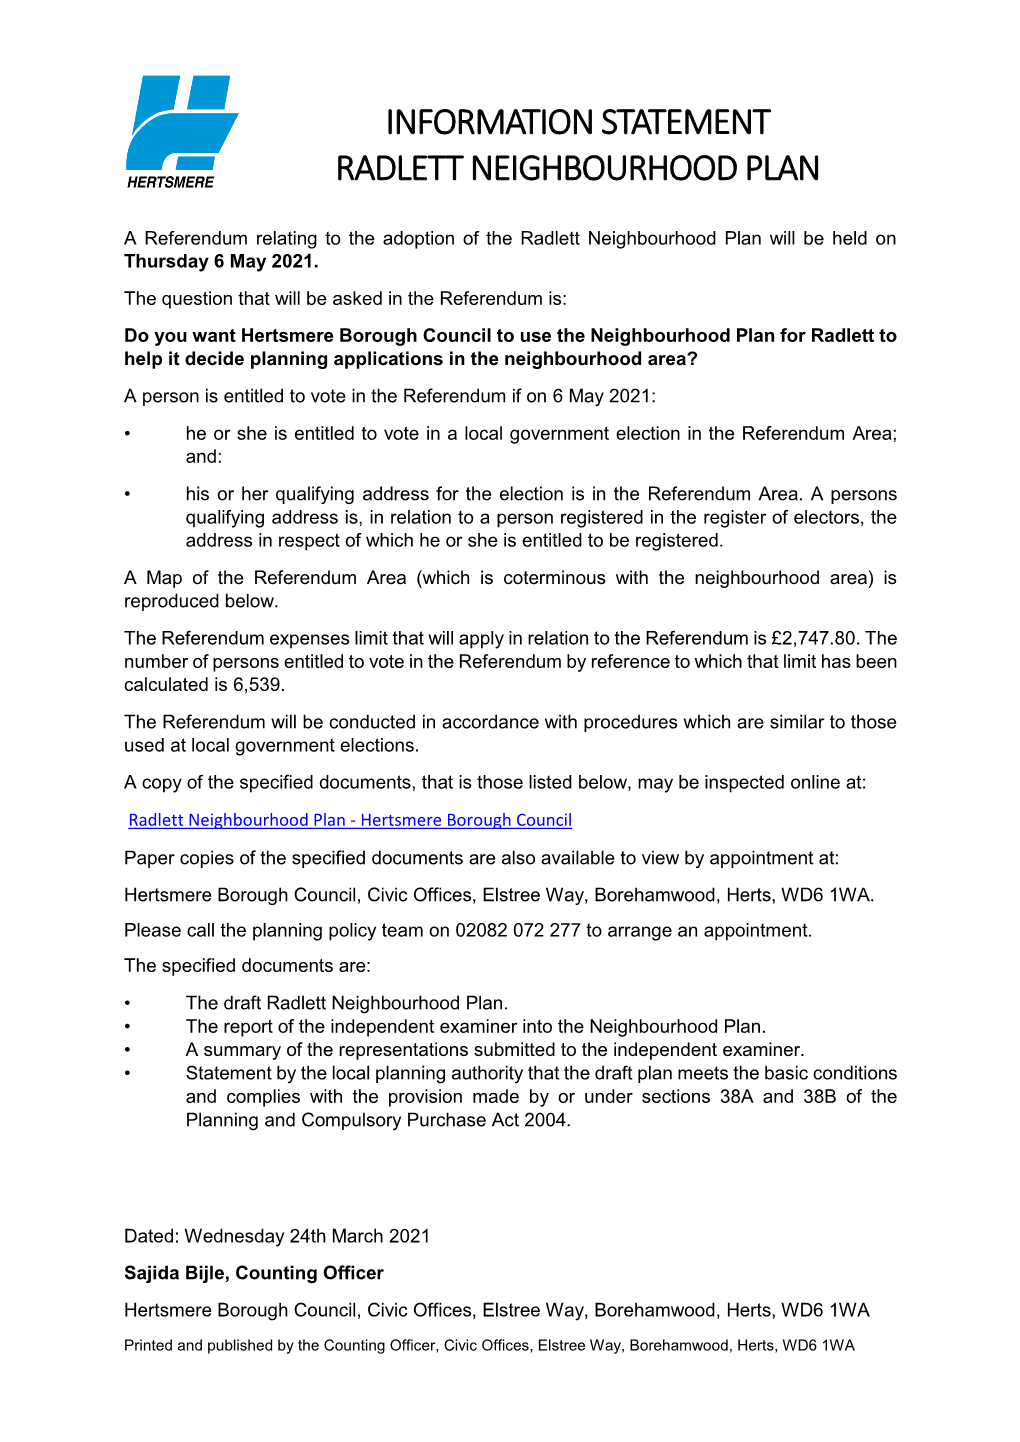 Radlett Neighbourhood Plan Information Statement